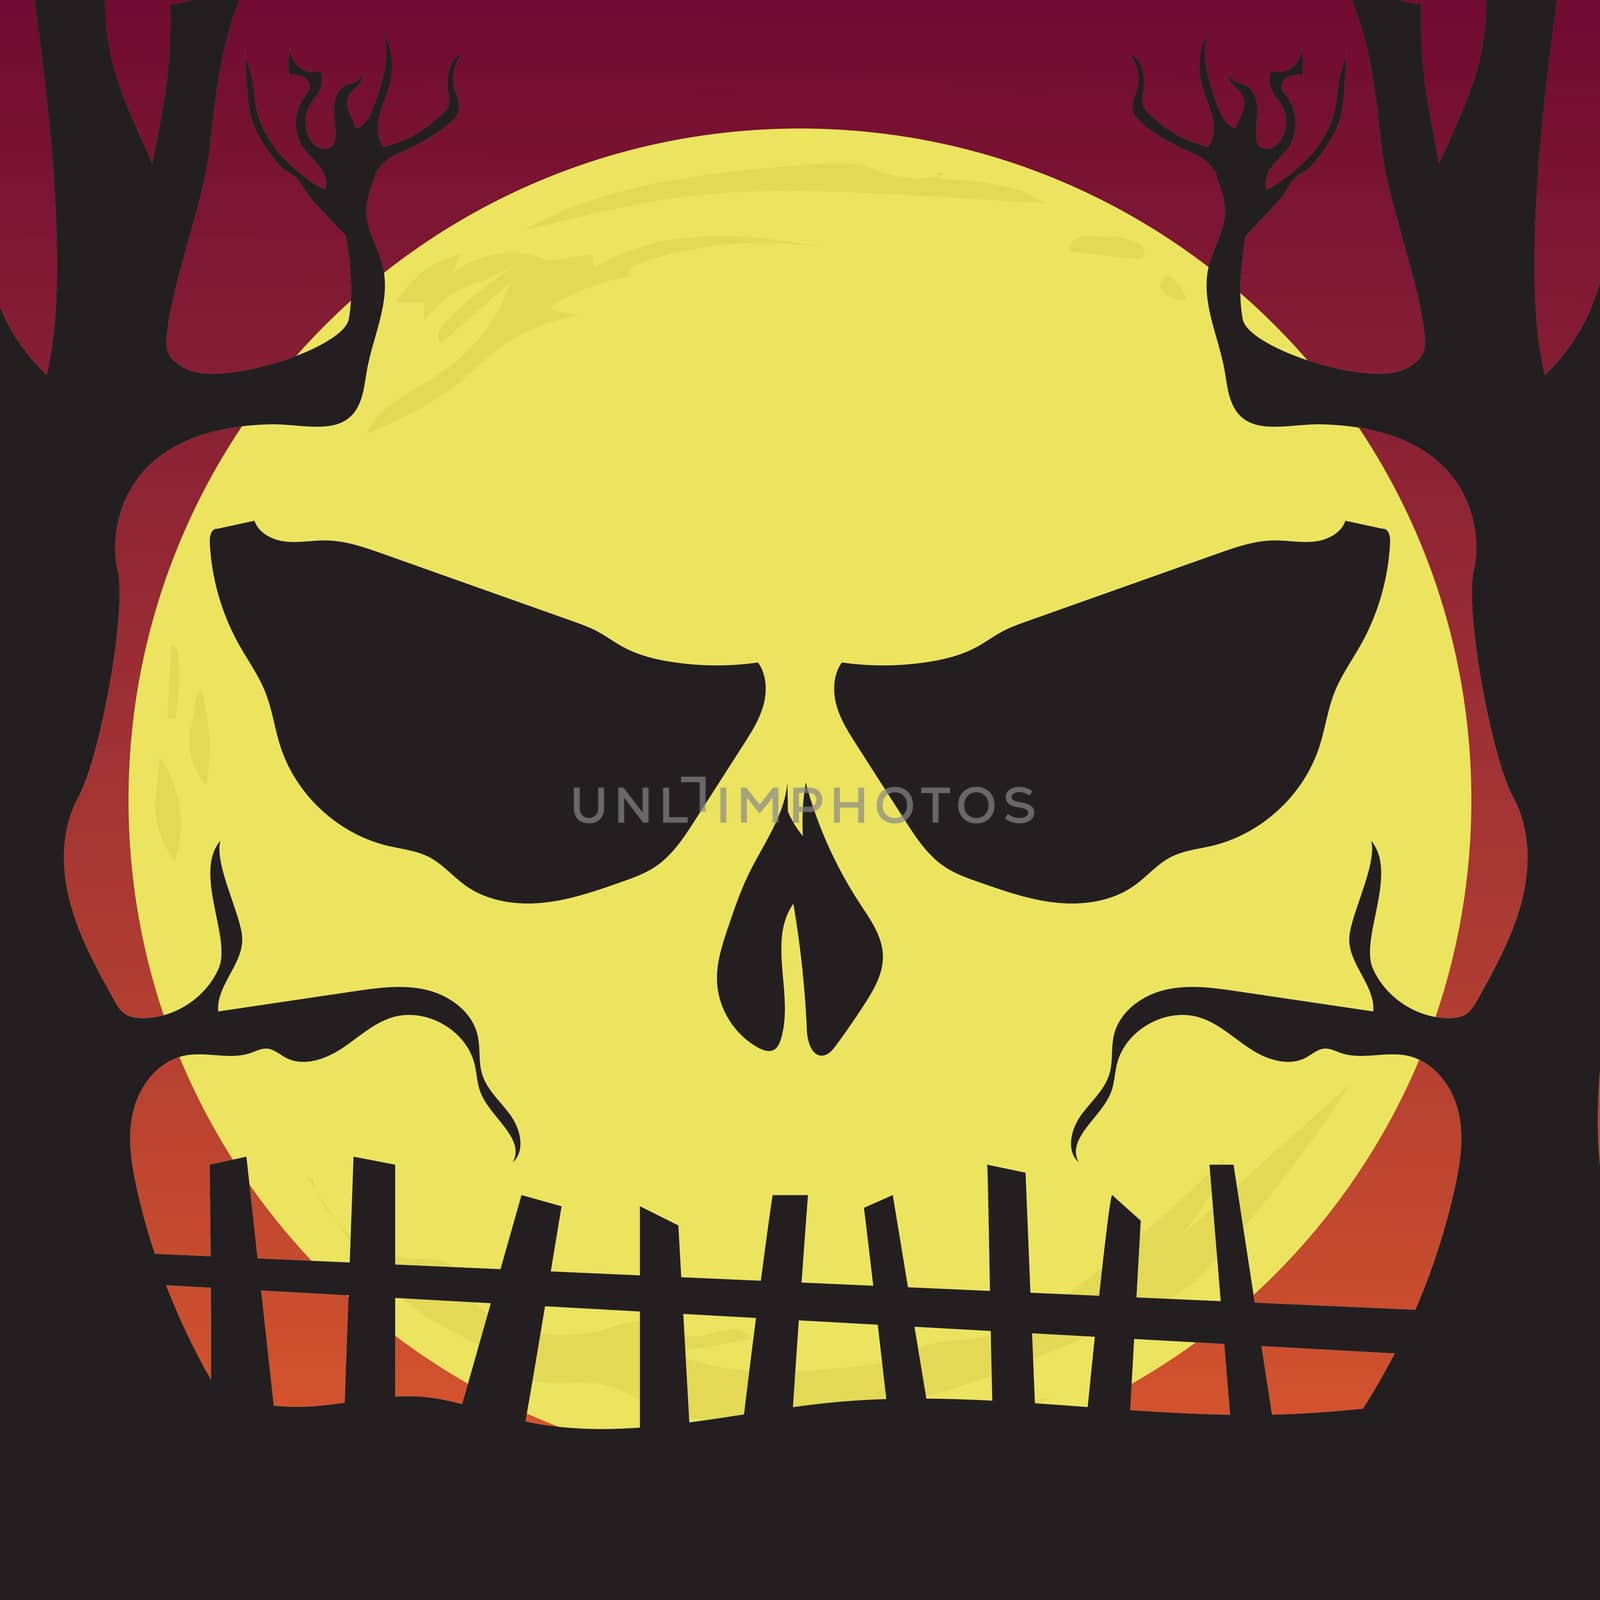 Spooky Halloween illustration of halloween skull